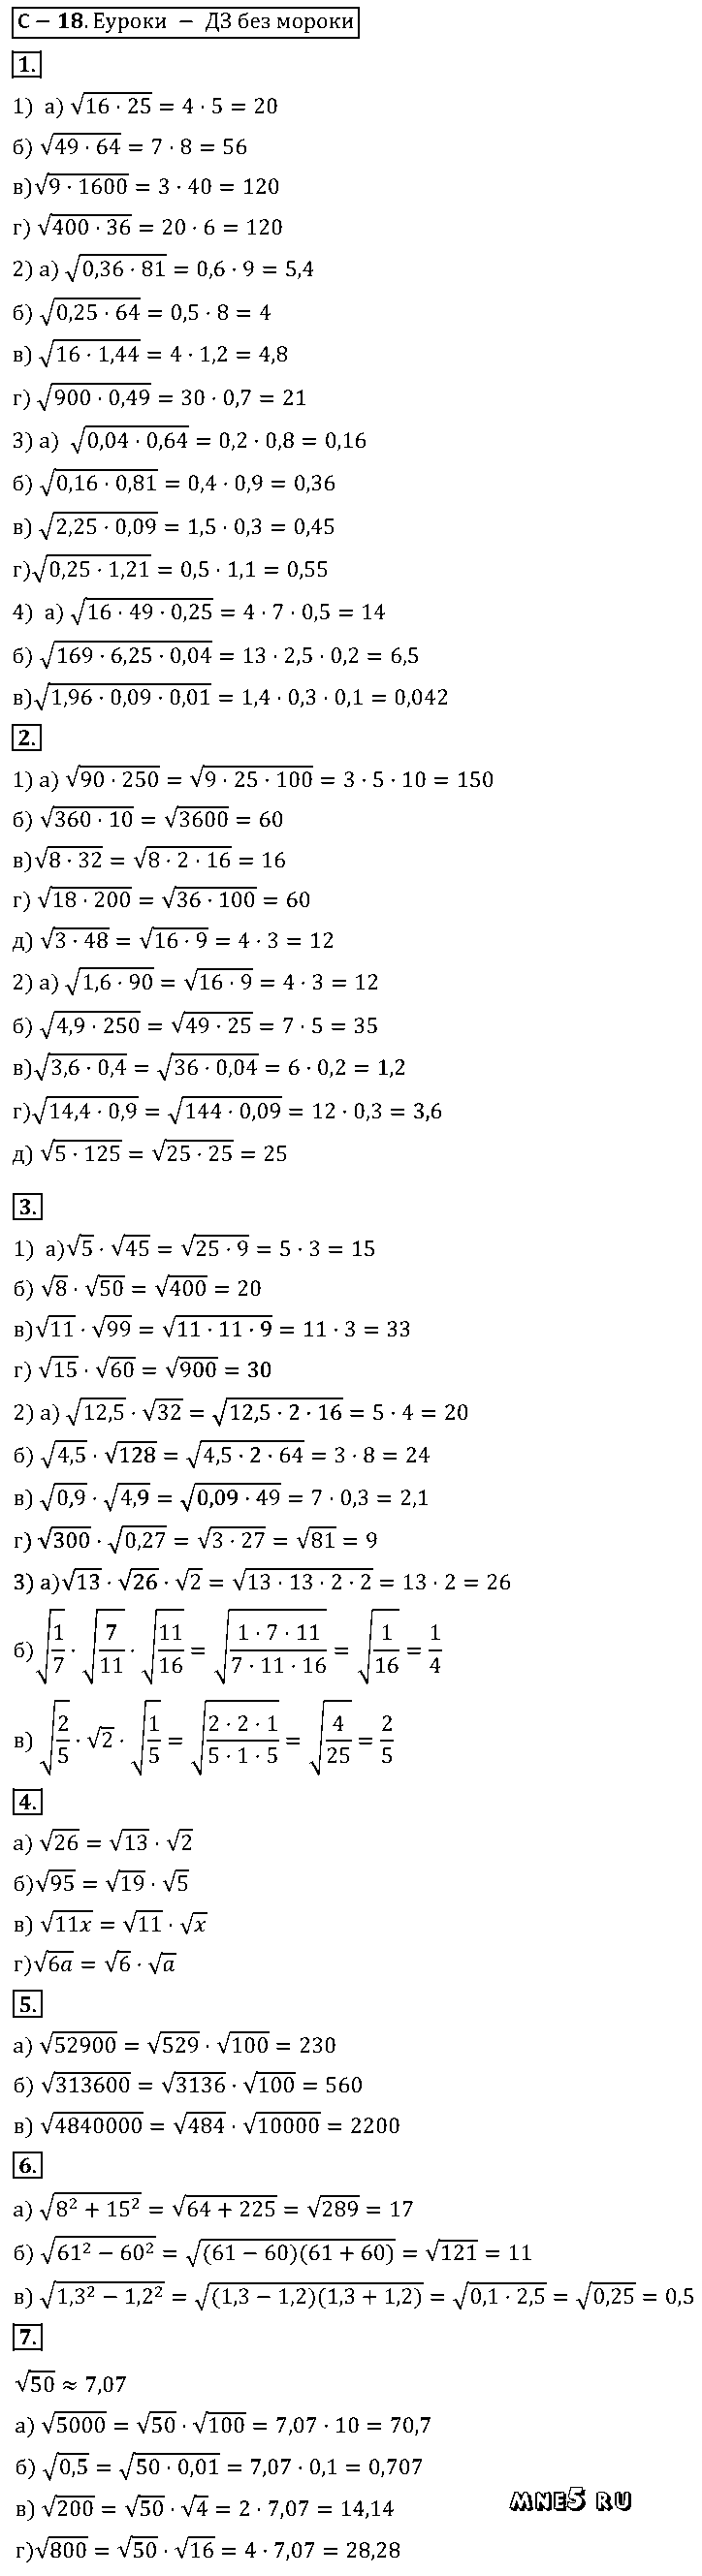 ГДЗ Алгебра 8 класс - С-18(18). Квадратный корень из произведения. Произведение корней